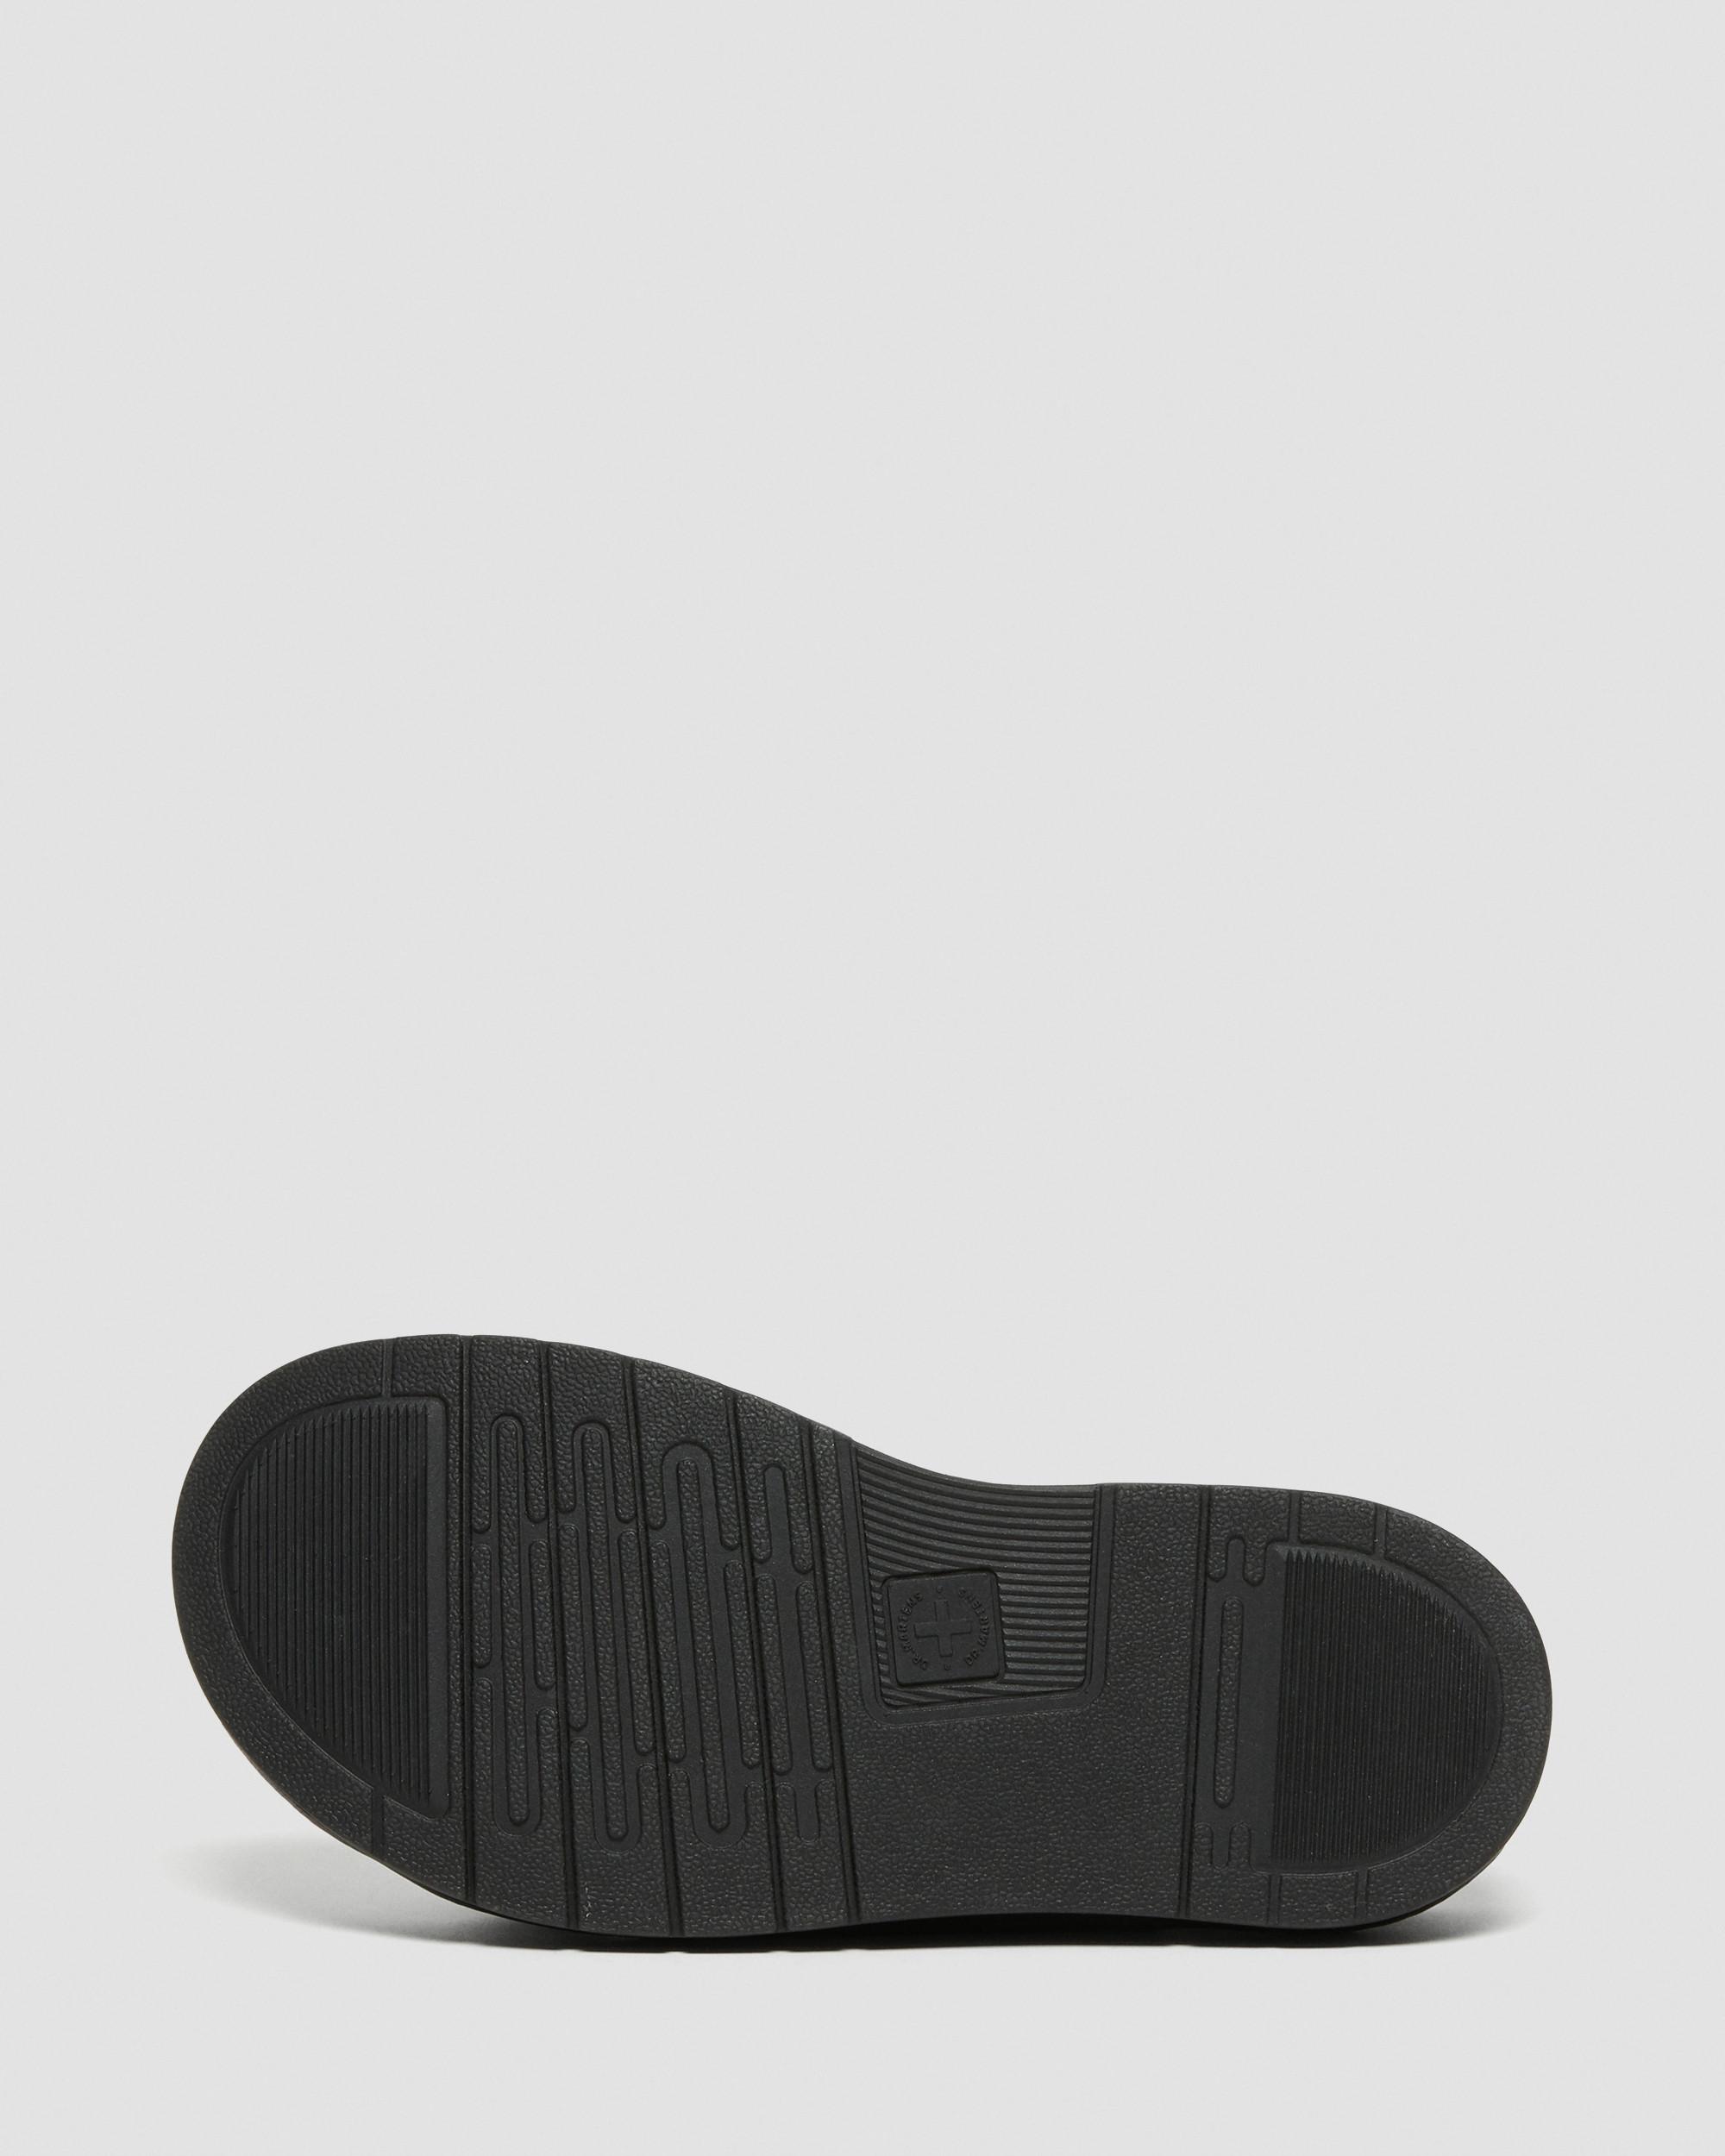 Soloman Men's Leather Strap Sandals, Black | Dr. Martens